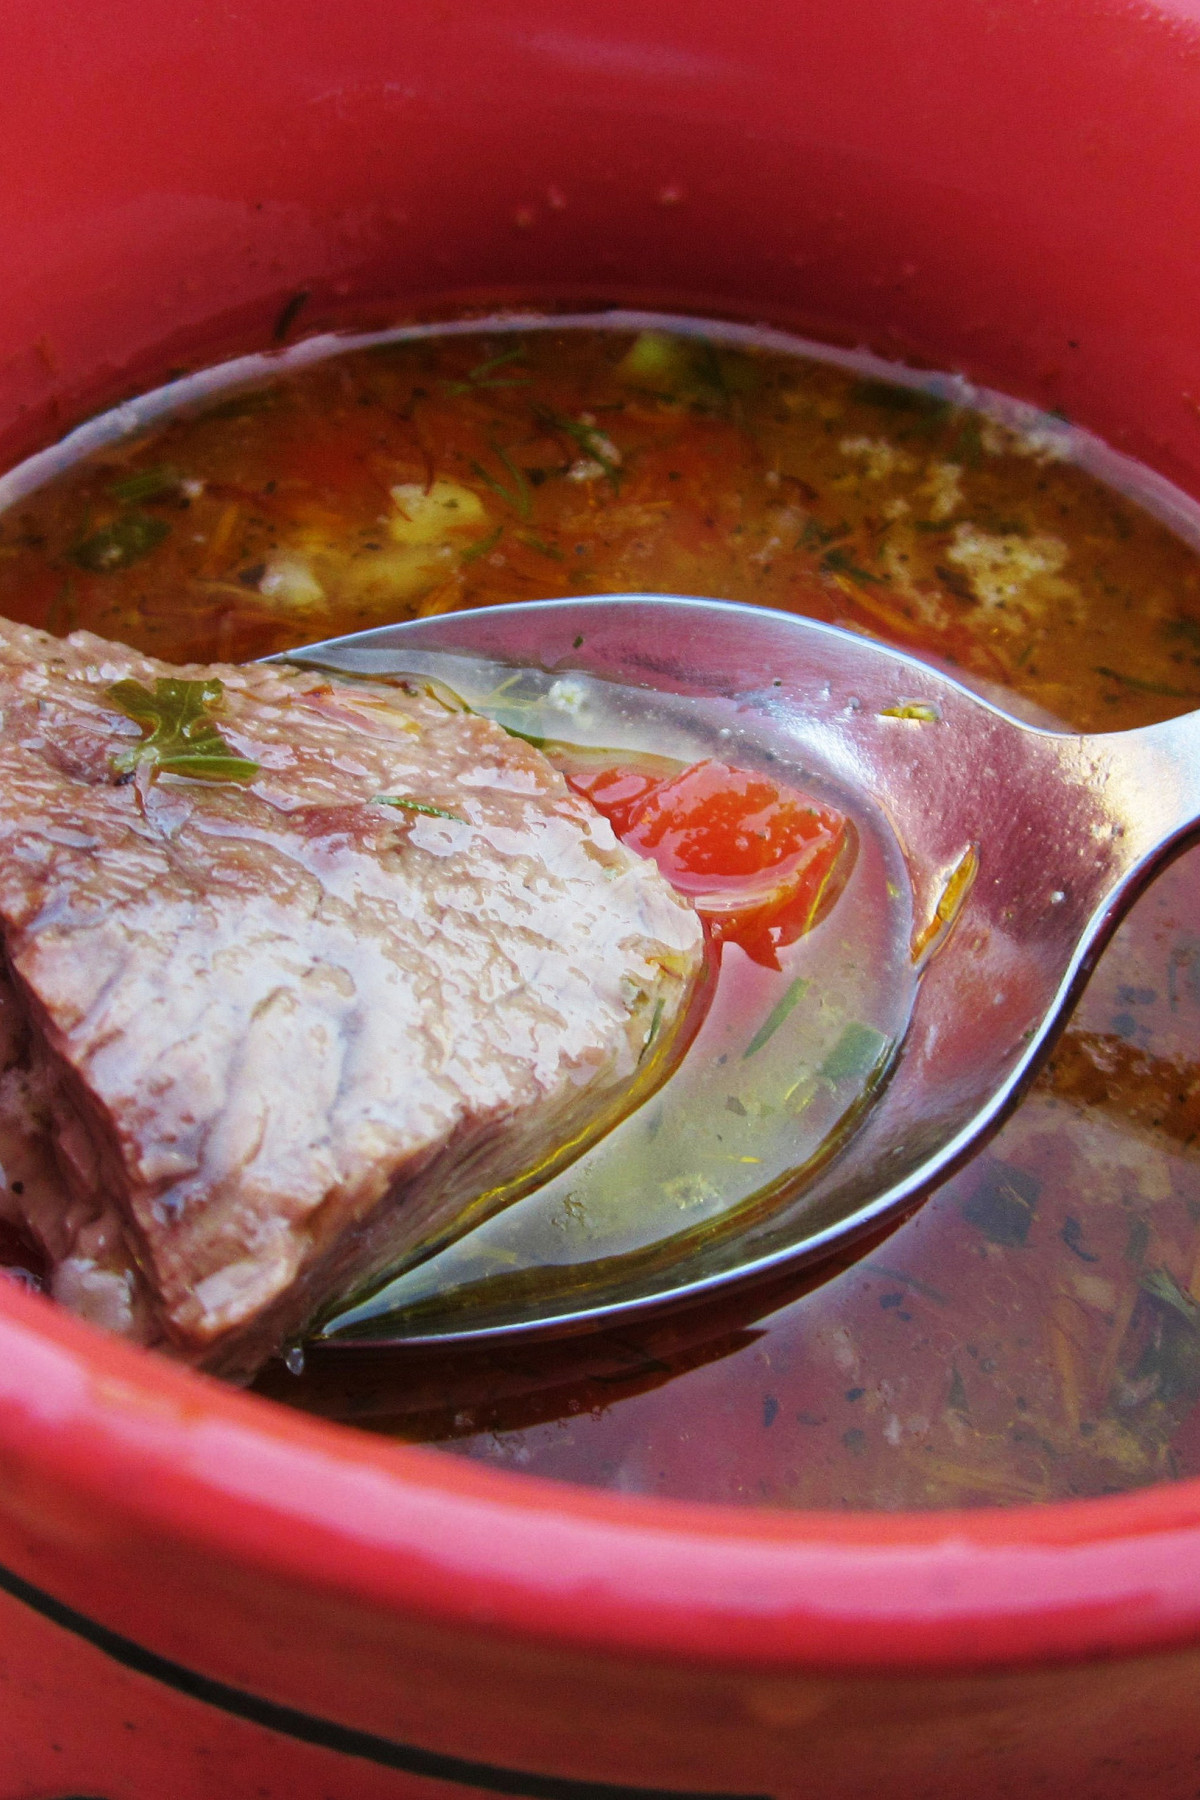 Адски вкусный и ароматный! Как приготовить суп харчо: пошаговый рецепт